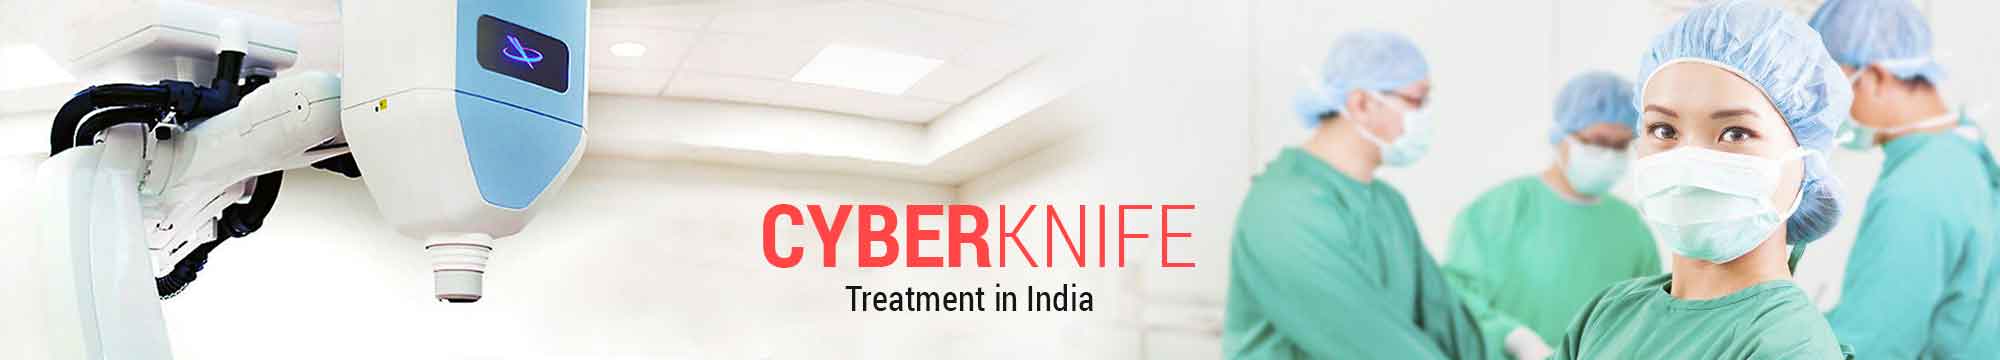 Cyberknife Treatment